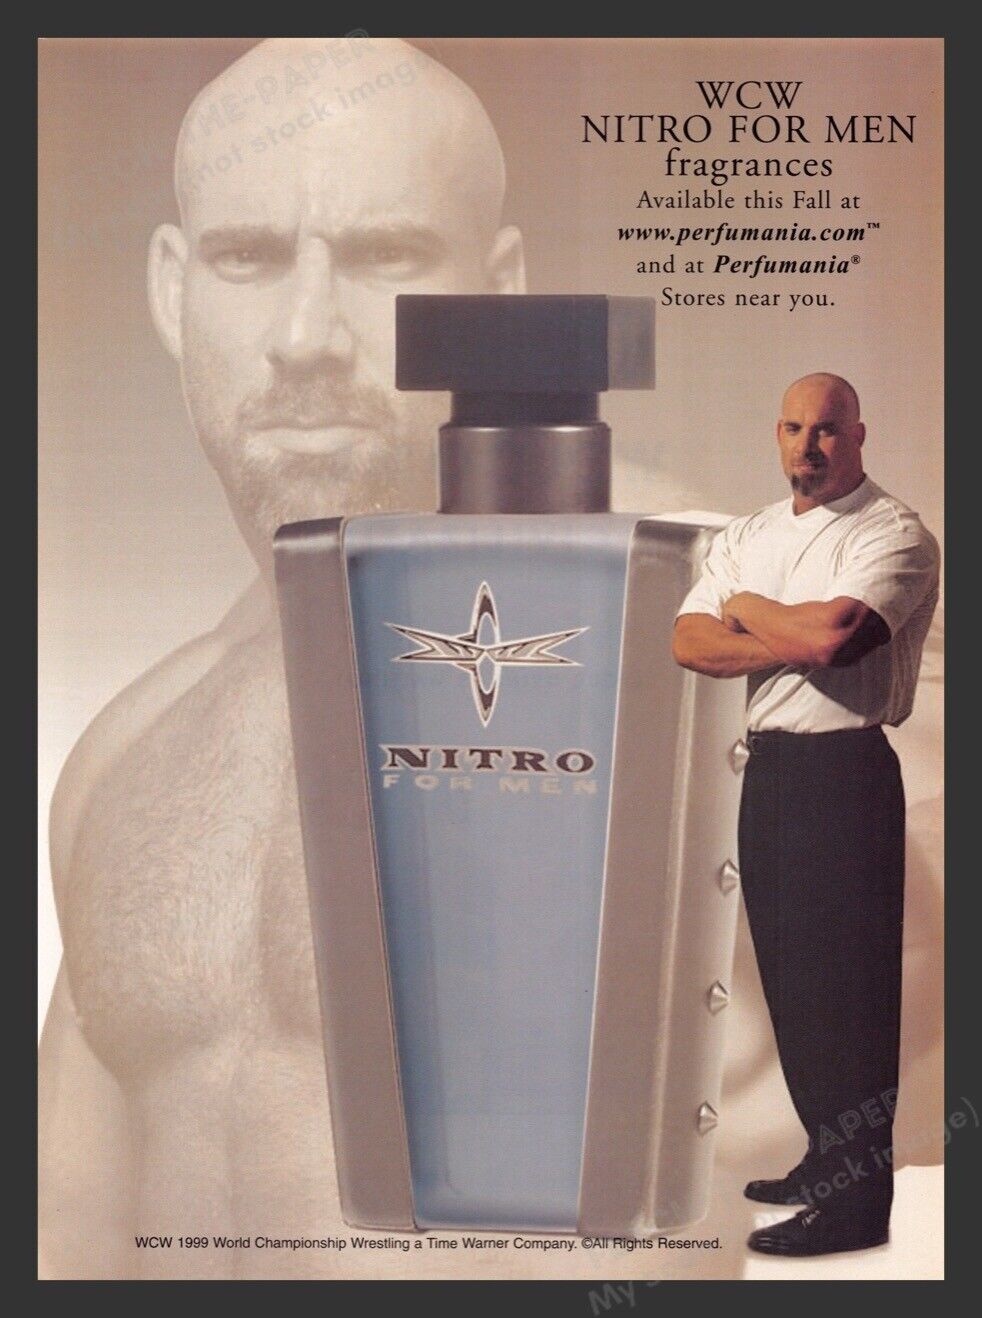 WCW Nitro Cologne for Men Bill Goldberg Wrestler 1990s Print Advertisement 1999